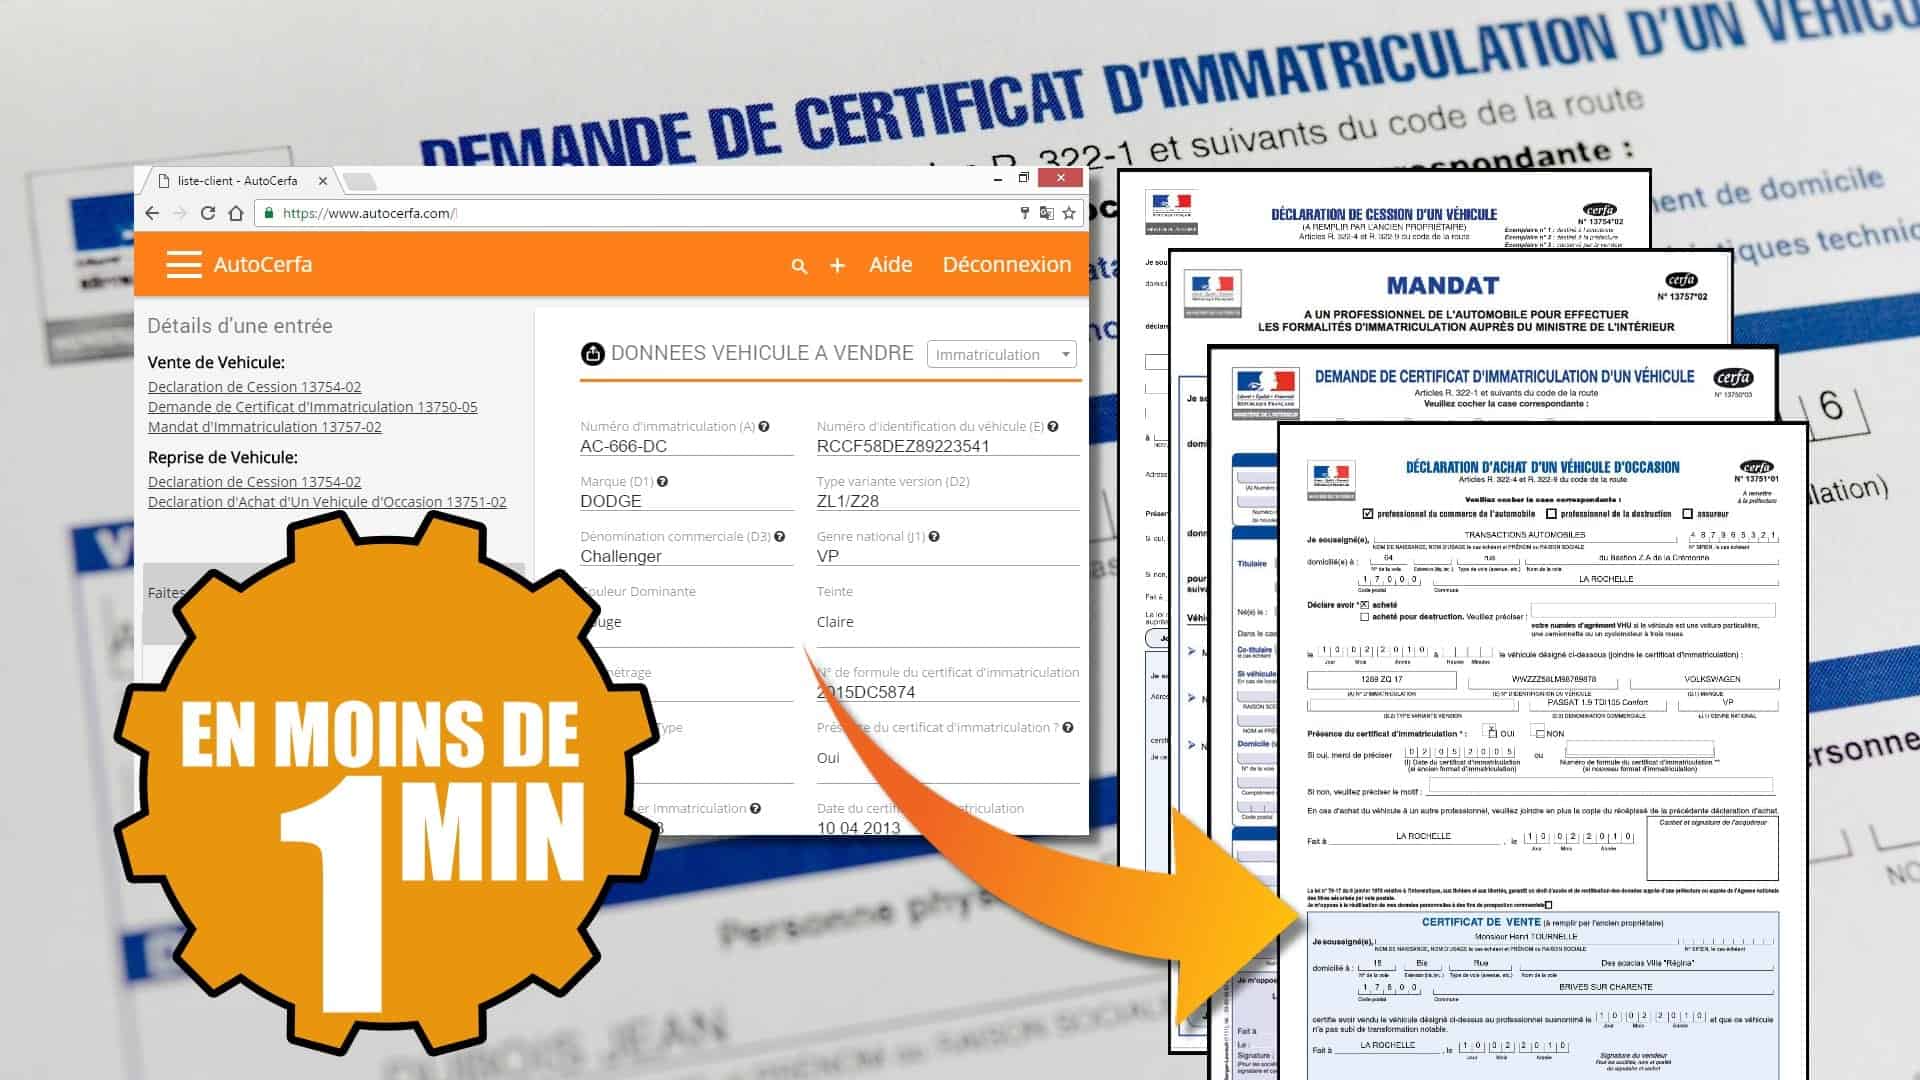 Remplissage automatique de formulaire cerfa pour concessionaire automobile en France. Un logiciel crée pour tous les concessionnaires d'automobiles.